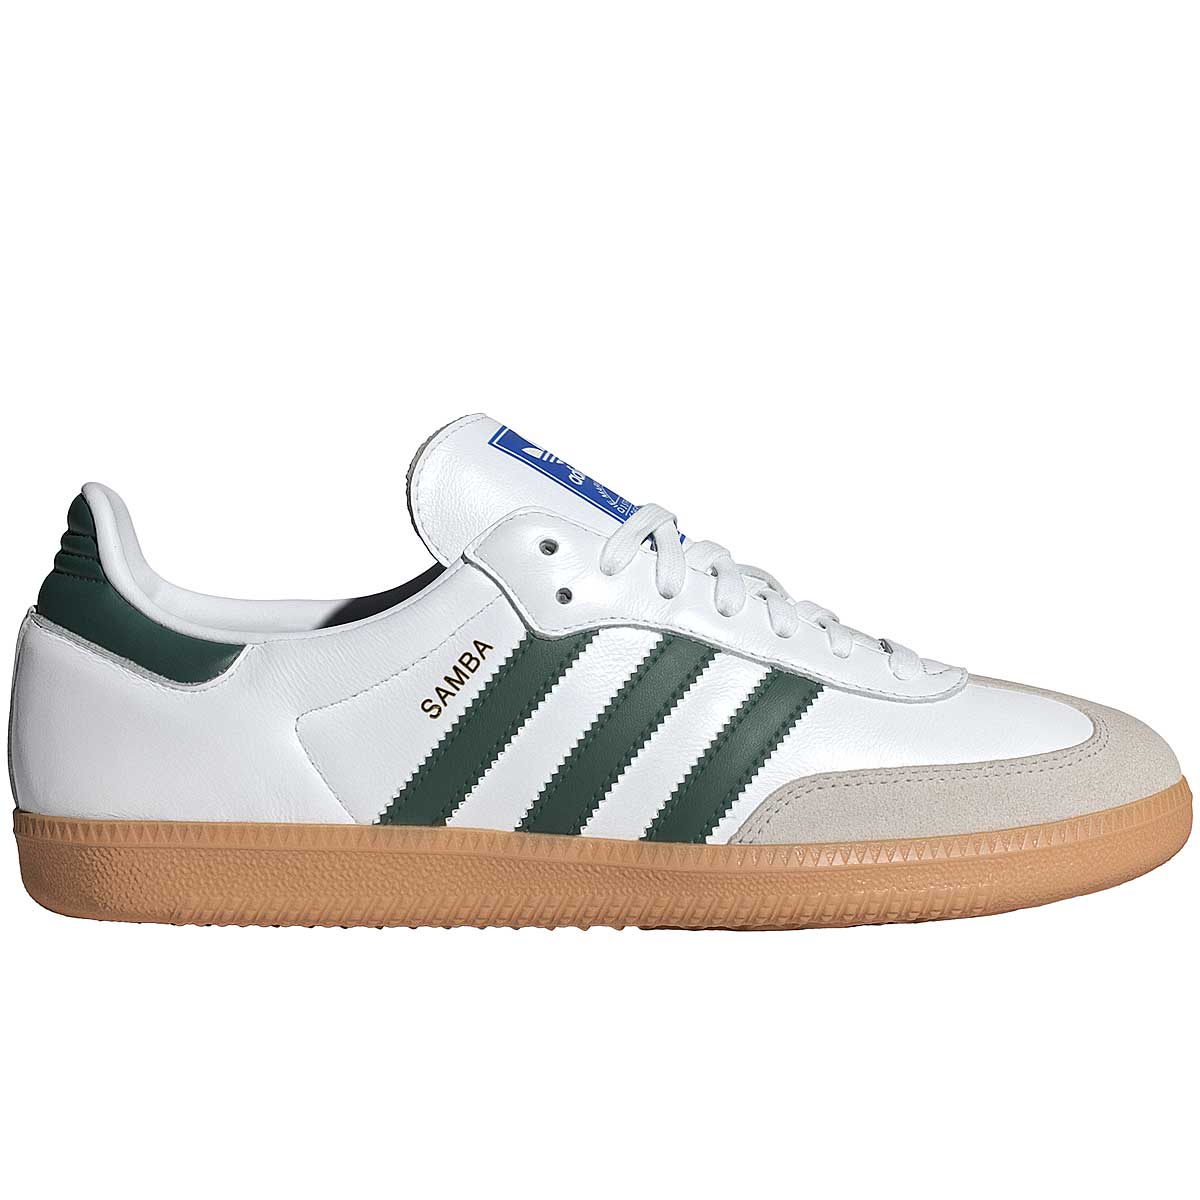 Image of Adidas Samba Og, White/green/beige